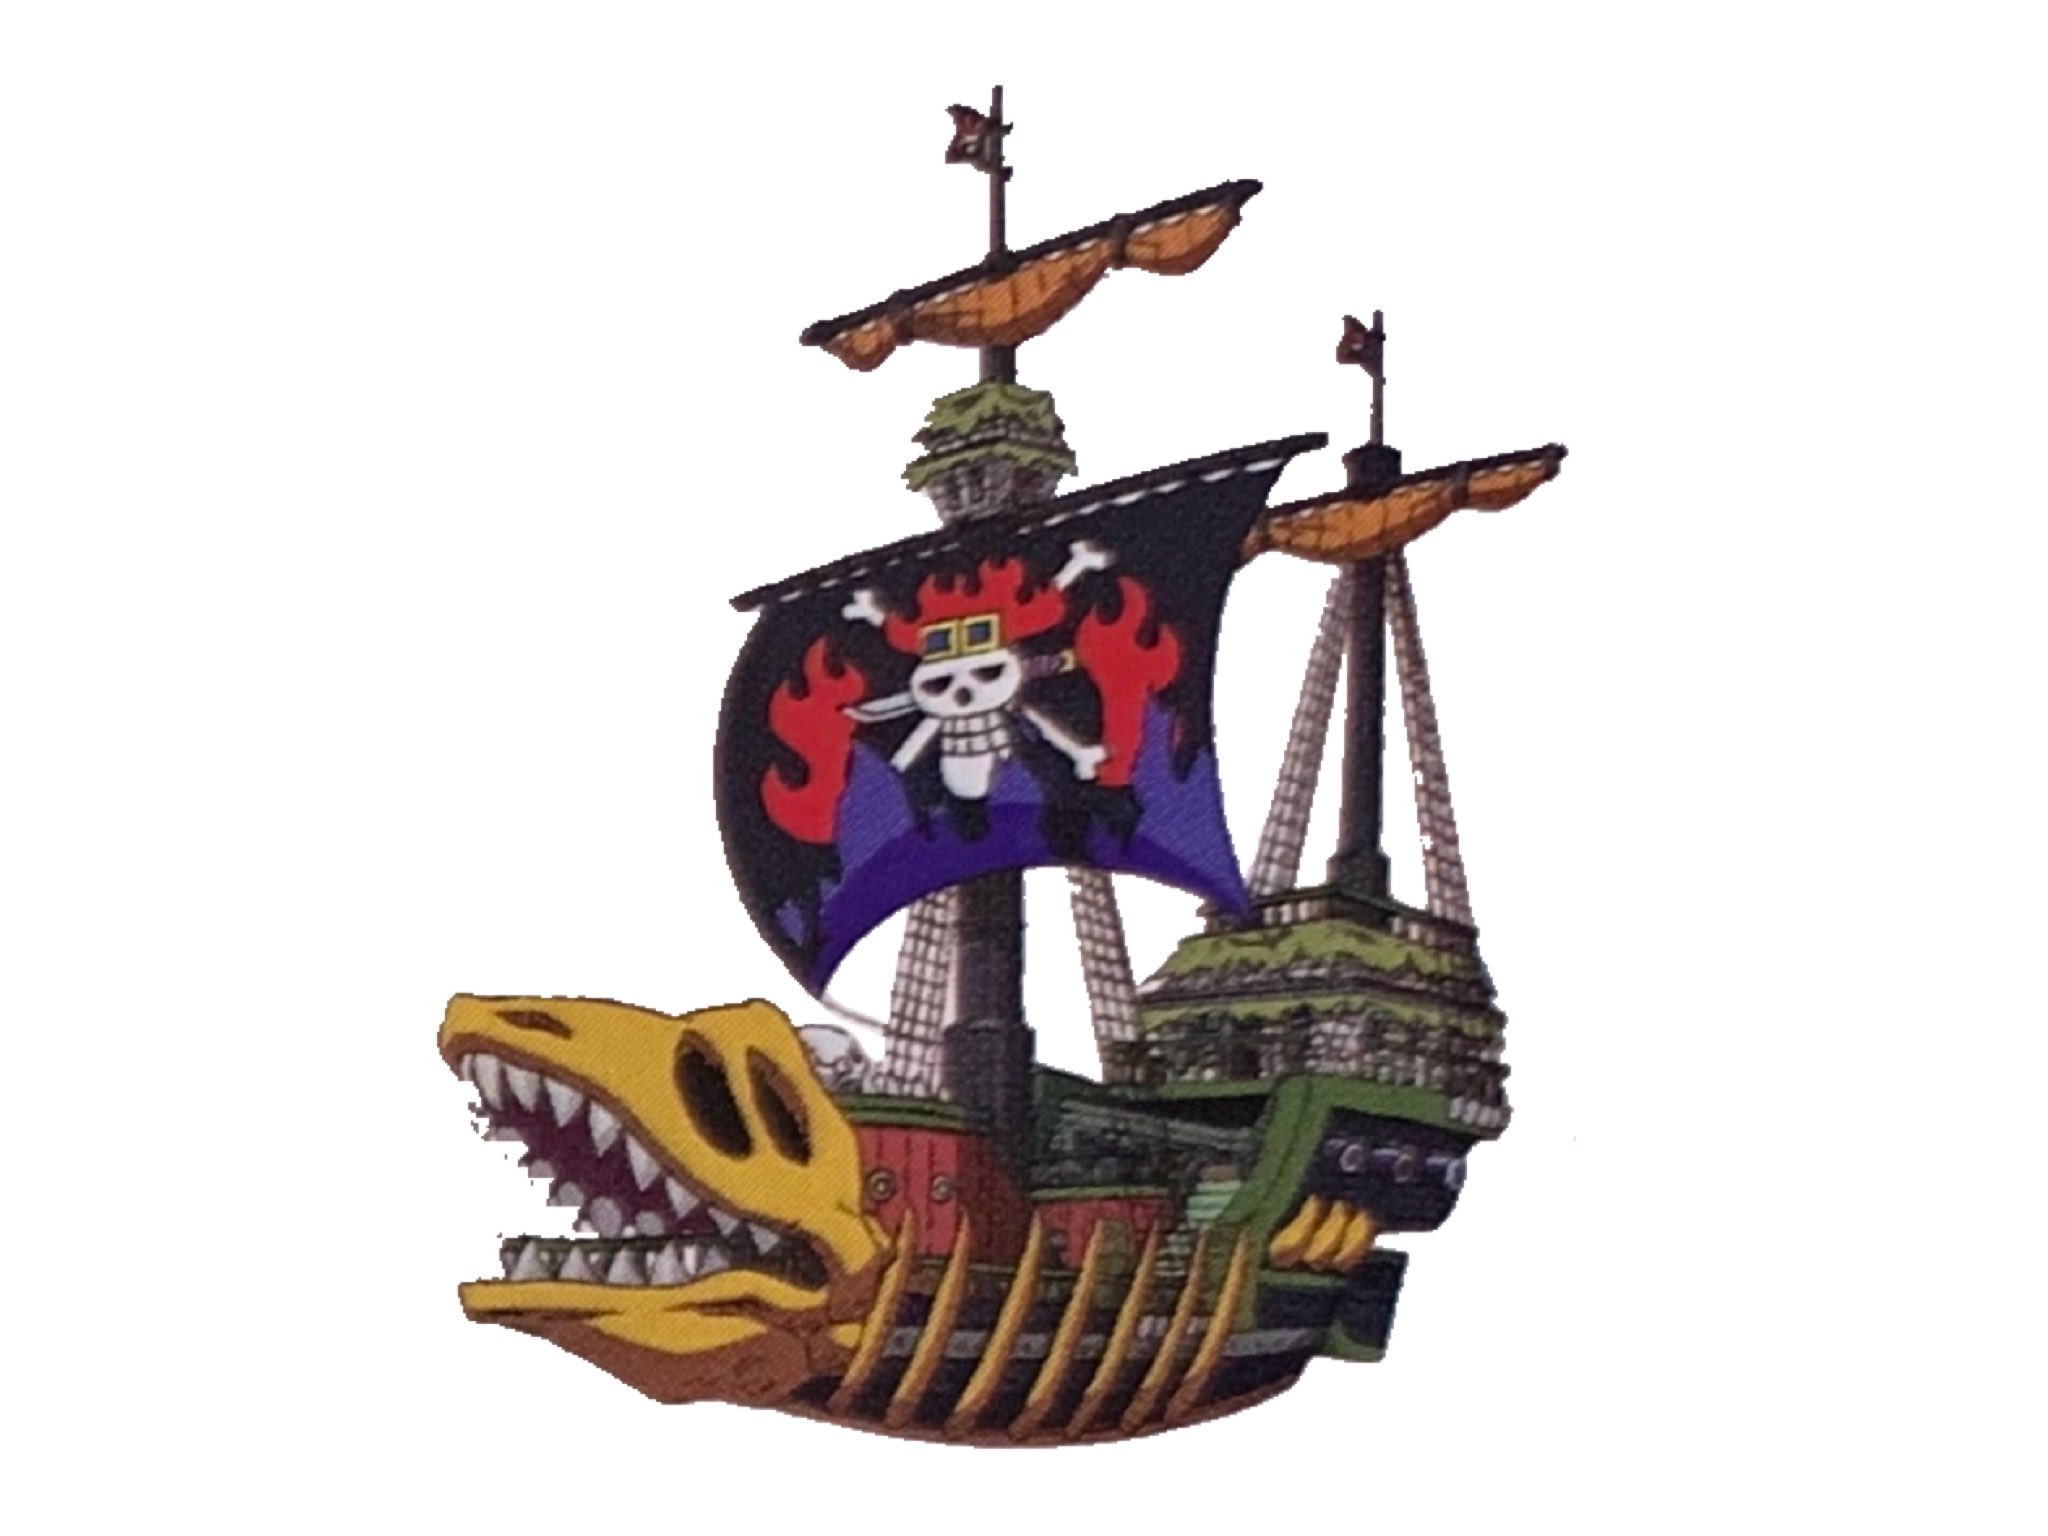 Log ワンピース考察 キッド海賊団の船についてのご質問 2年前はまだキッド達の船は ビクトリアパンク号 ではなかったっぽいですよね 画像2枚目 頂上戦争の時に集まった船の中にキッド達のもあると思うんですが どれでしょうかね 船首と甲板は